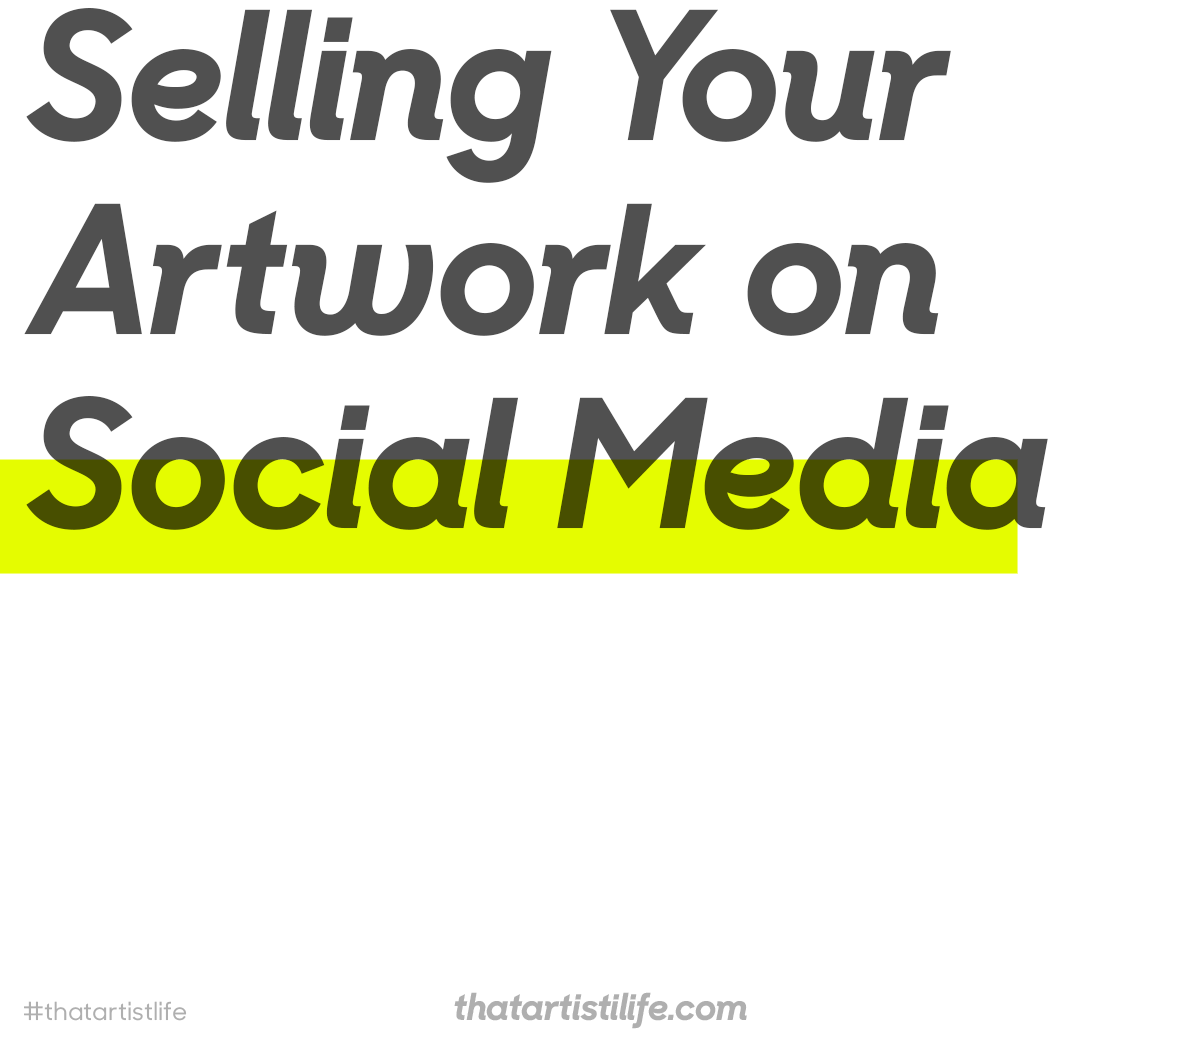 Selling Your Artwork On Social Media - #ThatArtistLife